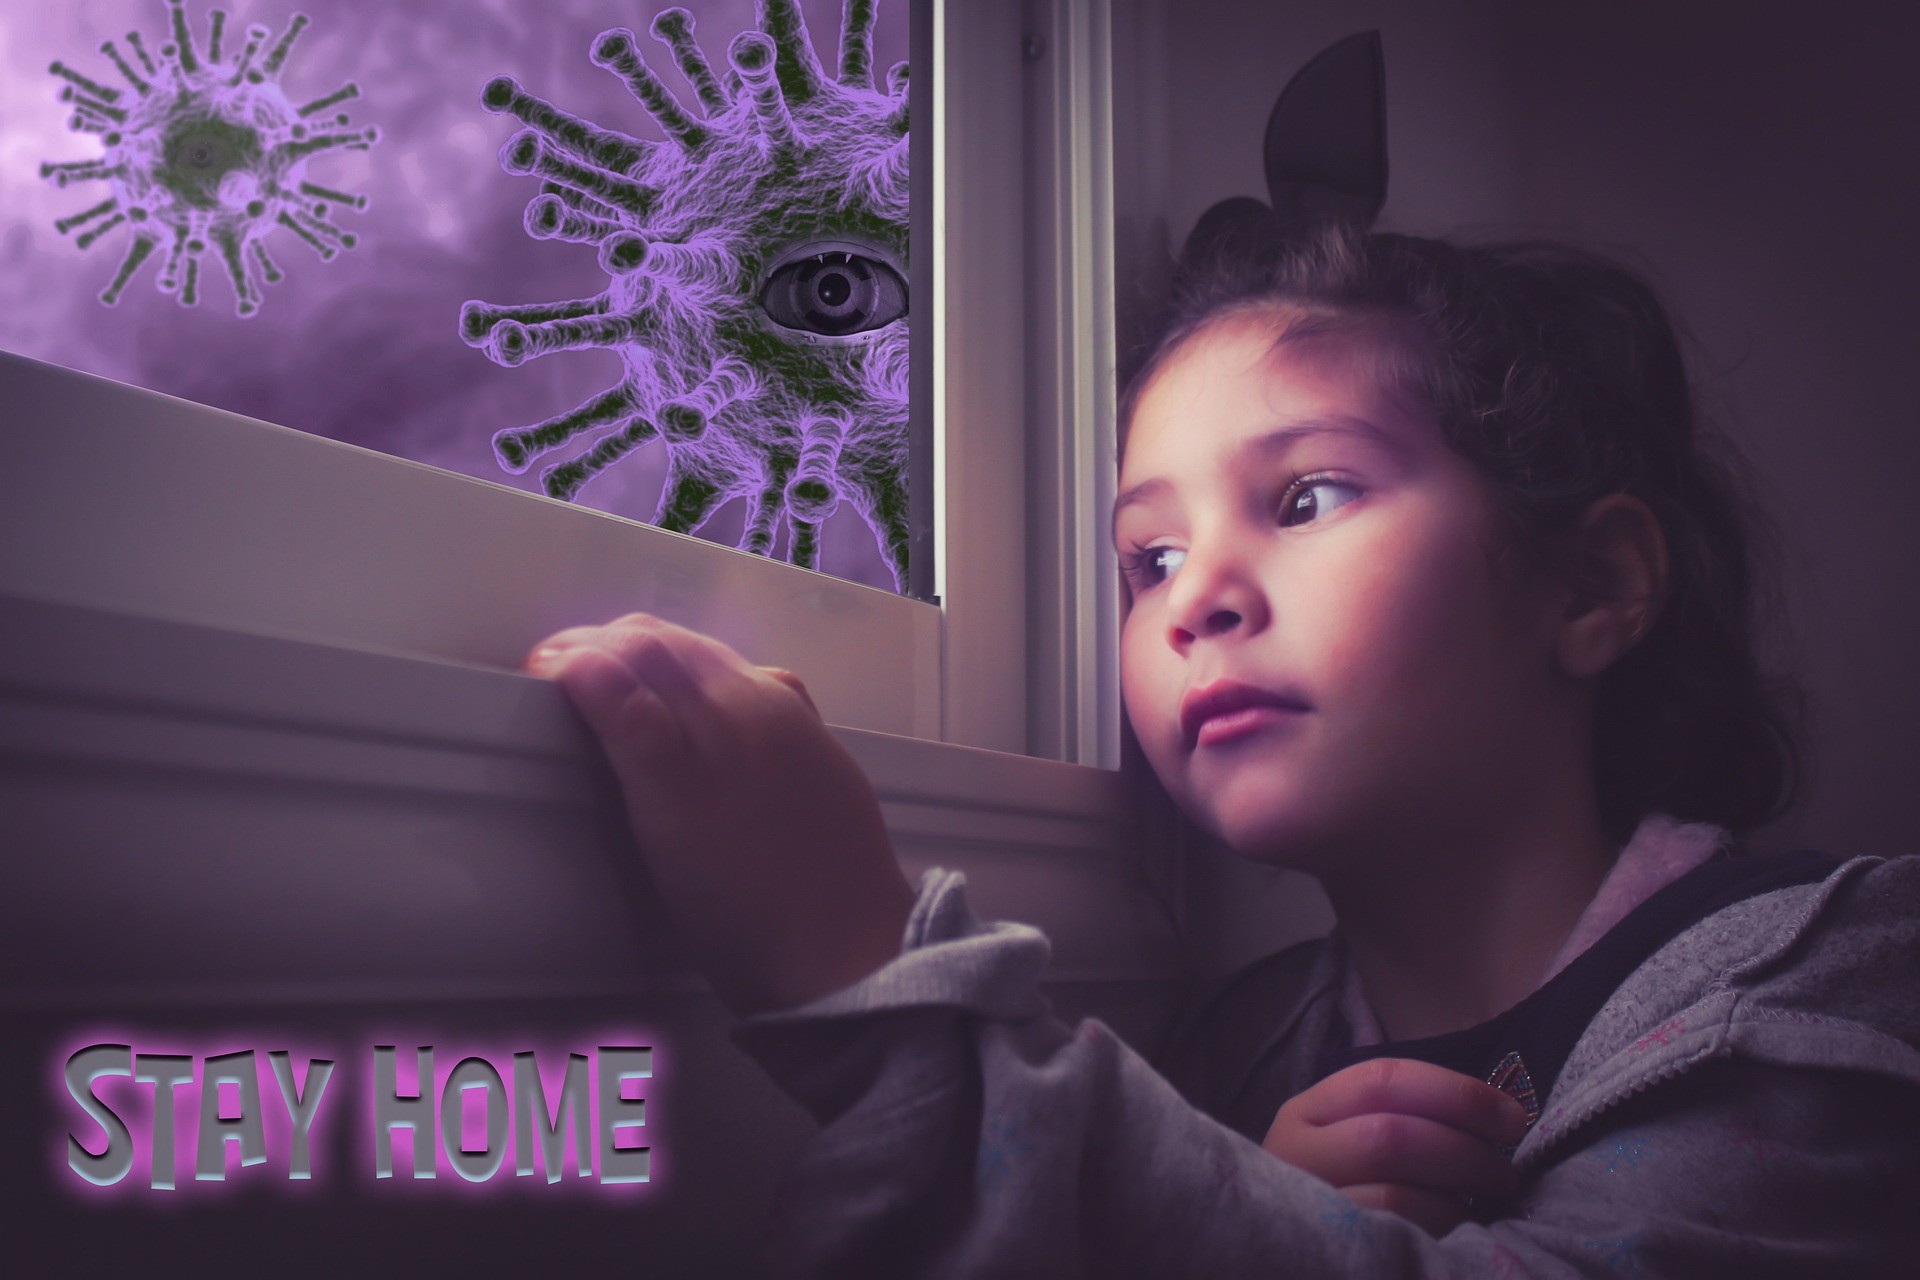 Von Ängsten und depressiven Verstimmungen haben Kinder und Jugendliche schon vor der Pandemie vermehrt berichtet. von Pixabay.com